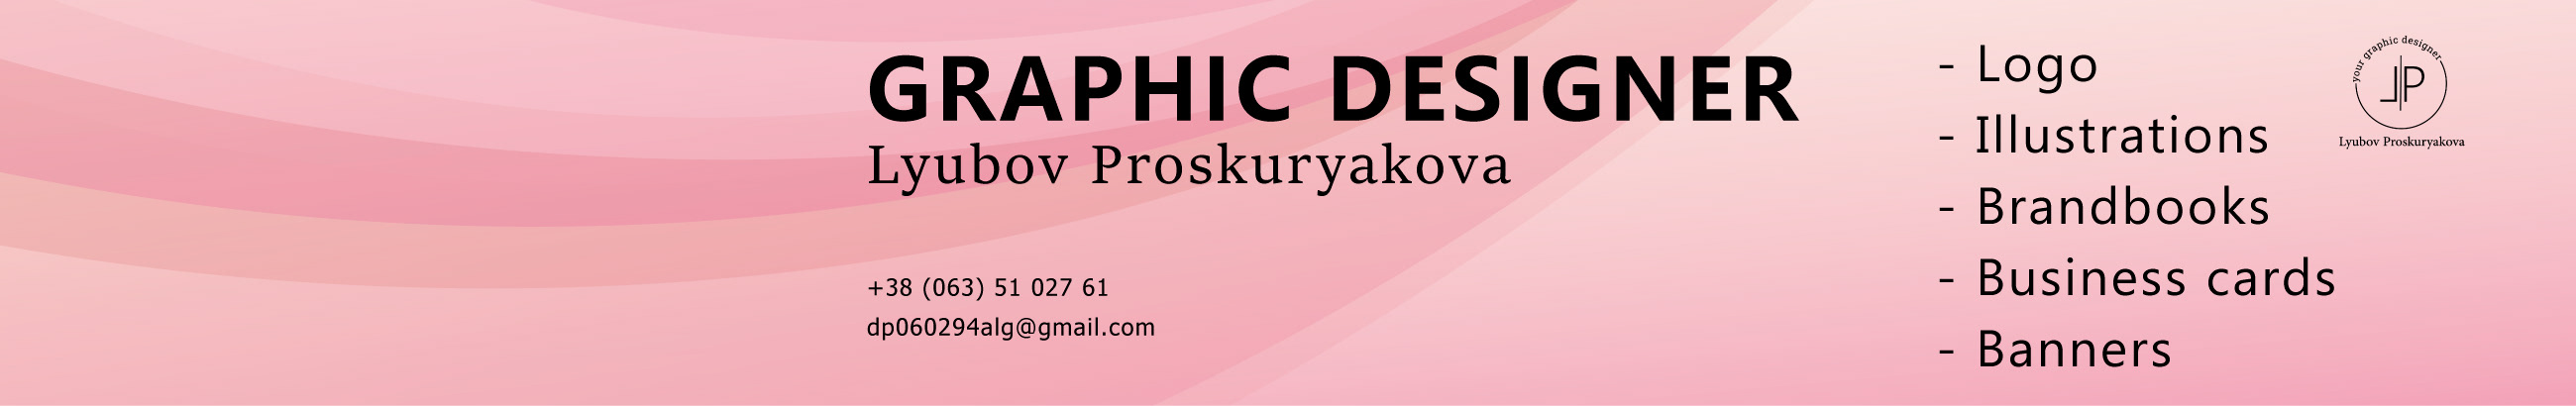 Lyubov Proskuryakova's profile banner